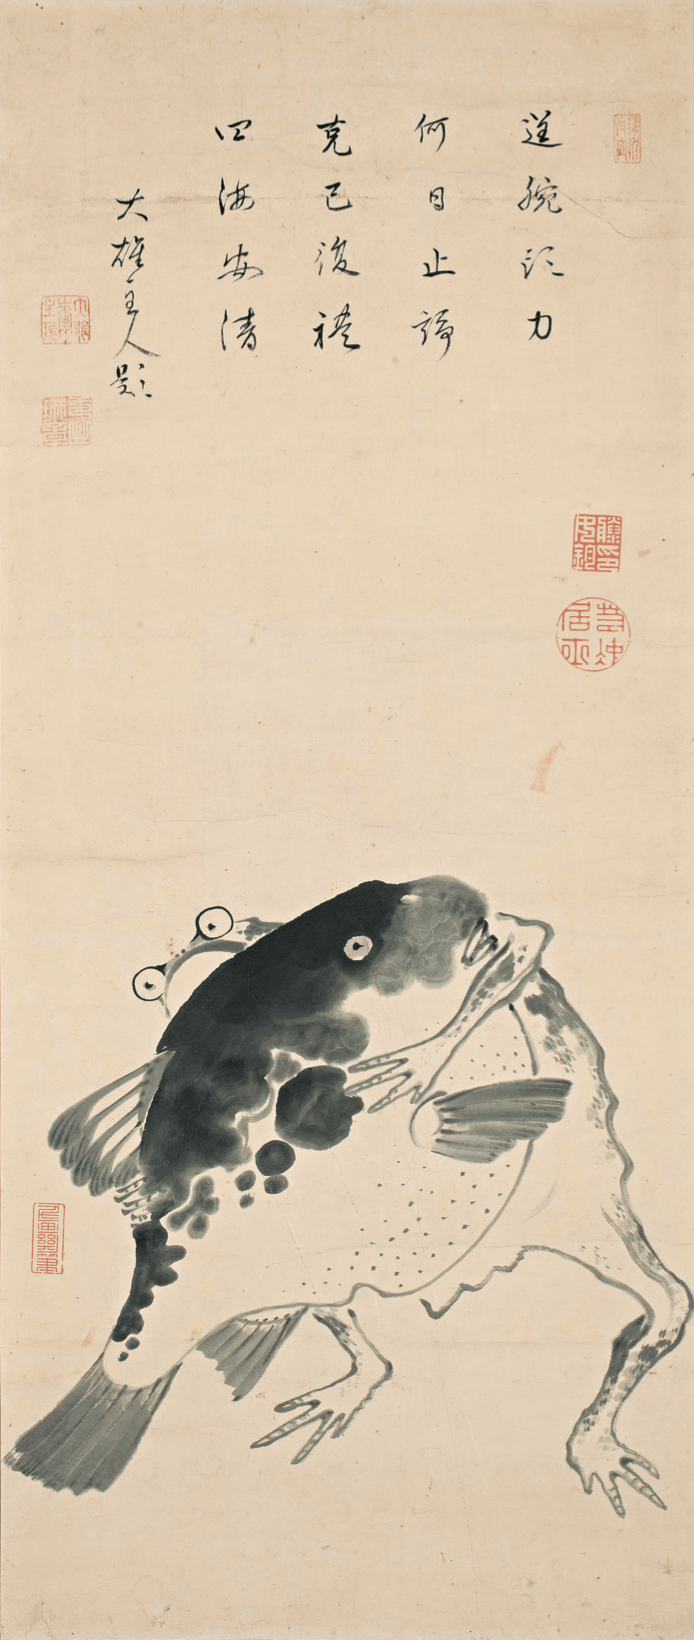 DMA-河豚と蛙の相撲図-min